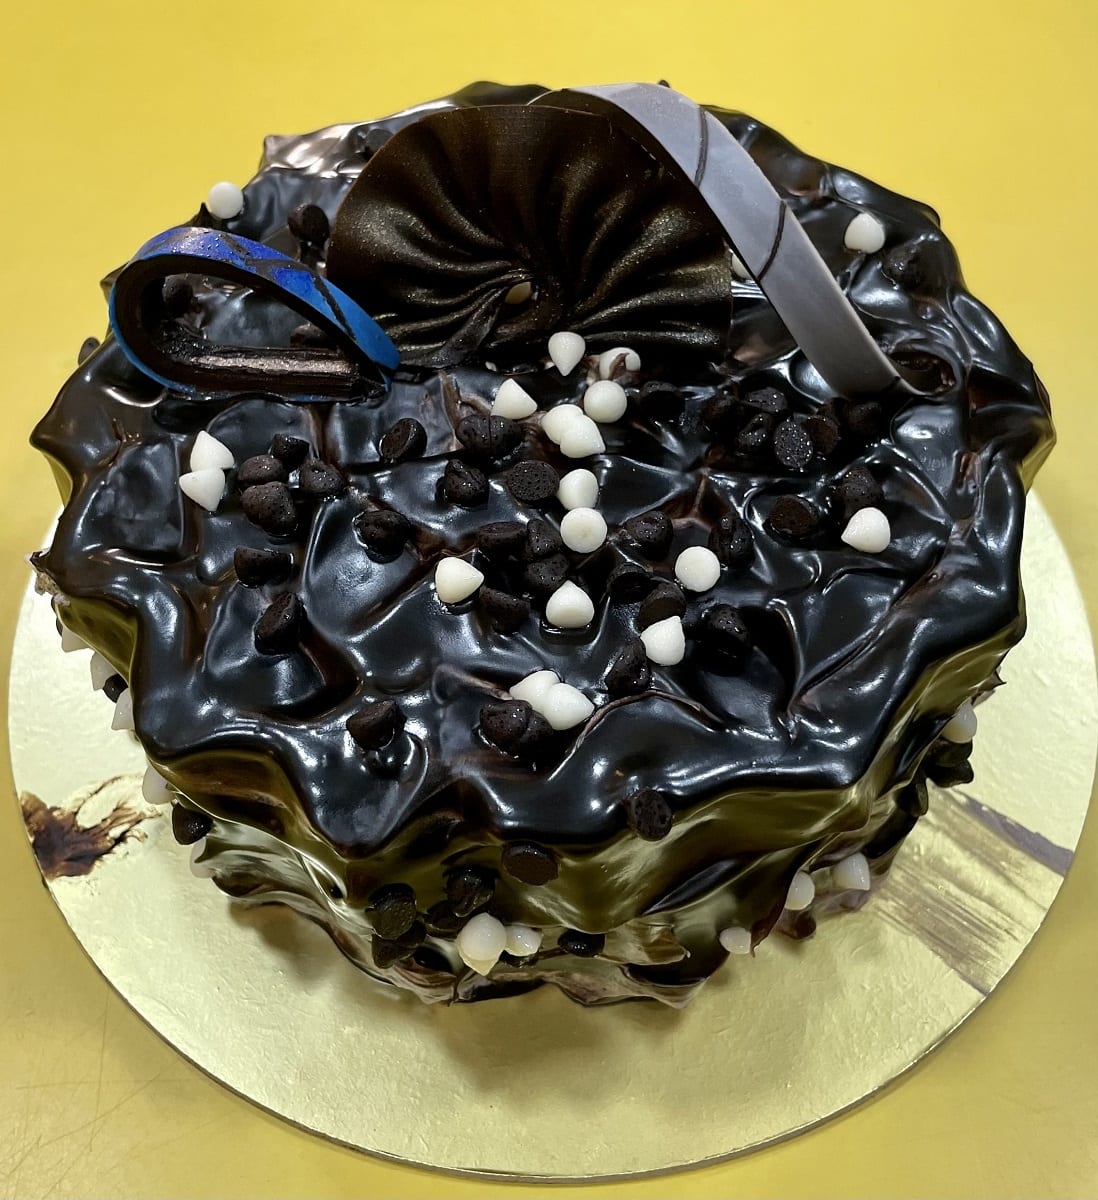 Easy & Quick Birthday Cake | मिनटों में बनाये बर्थडे केक वो भी ब्रेड से |  Eggless Instant Cake - YouTube